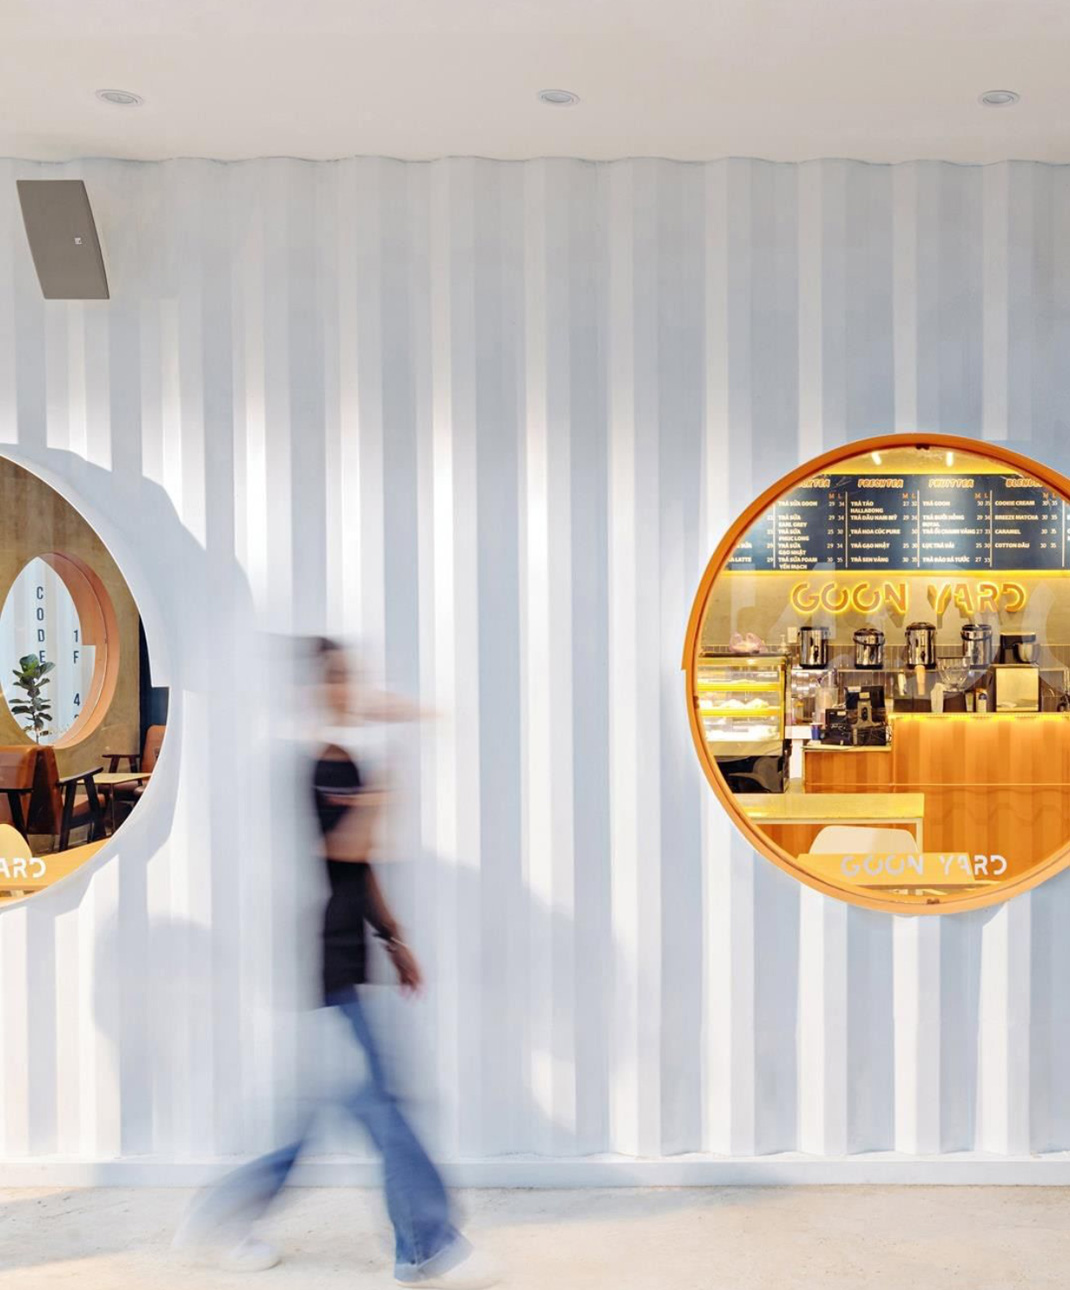 咖啡店Goon Yard 越南 咖啡店 集装箱 logo设计 vi设计 空间设计